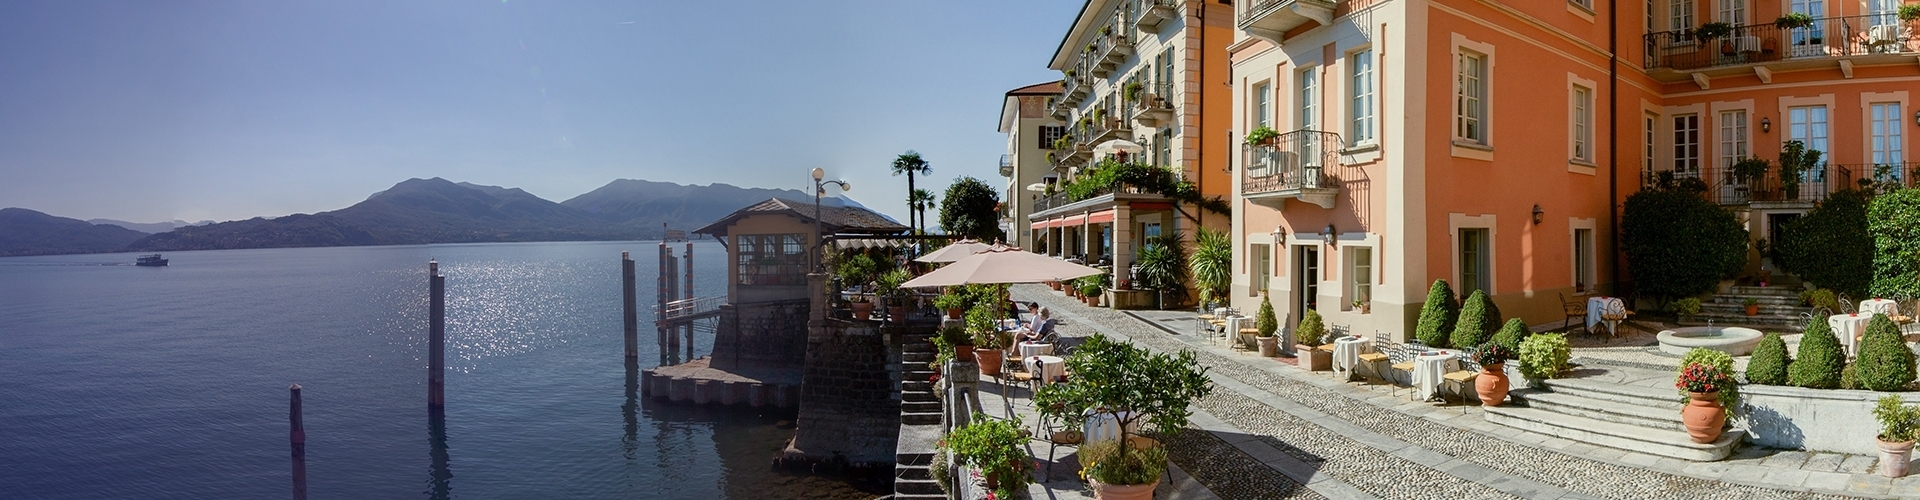 Hotel aan het Lago Maggiore